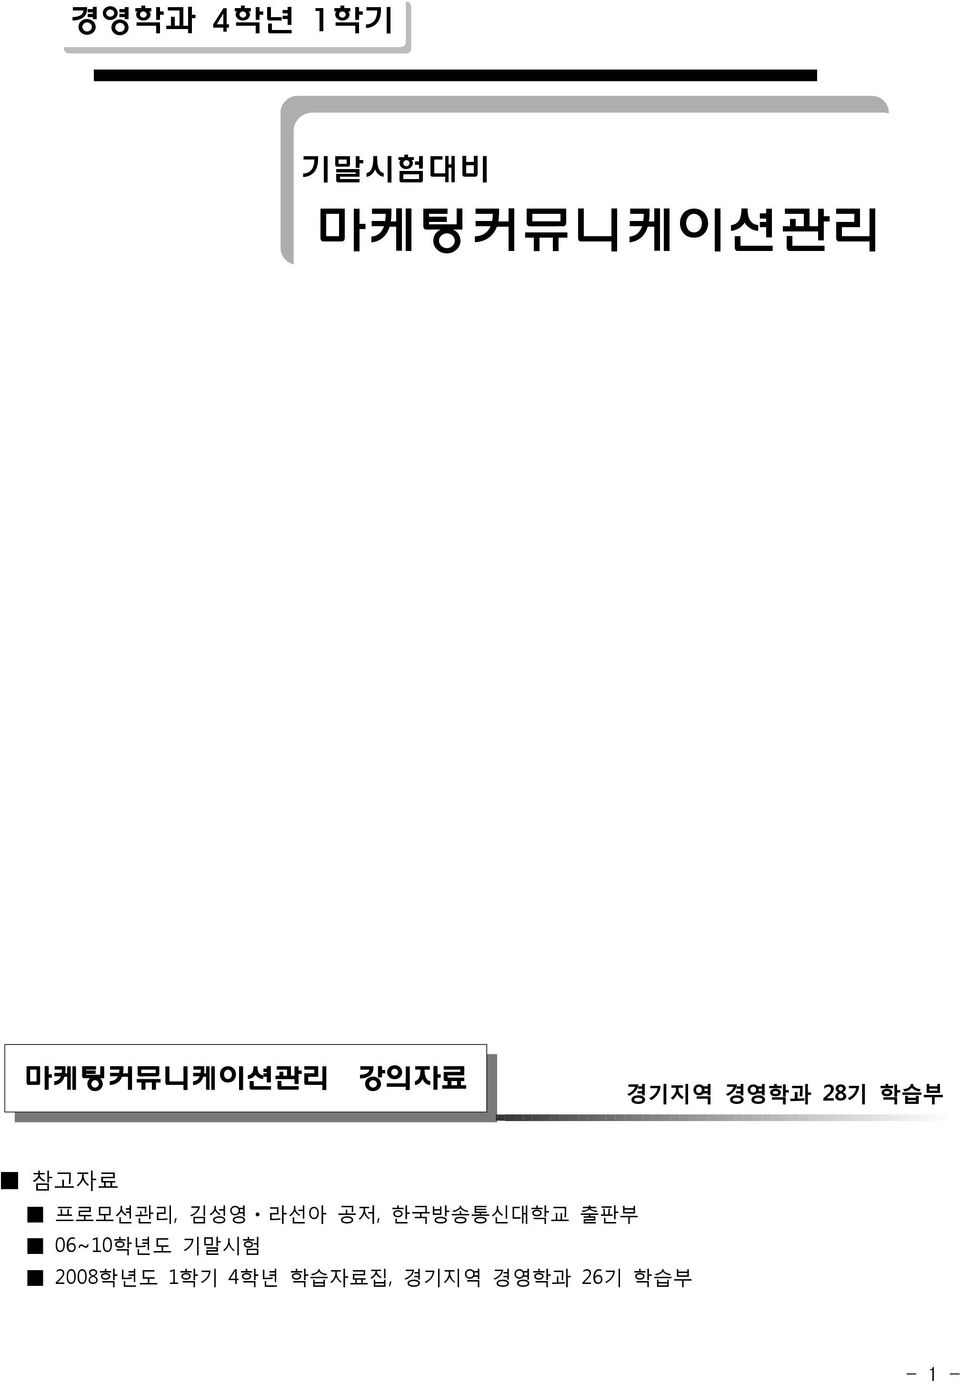 프로모션관리, 김성영ㆍ라선아 공저, 한국방송통신대학교 출판부